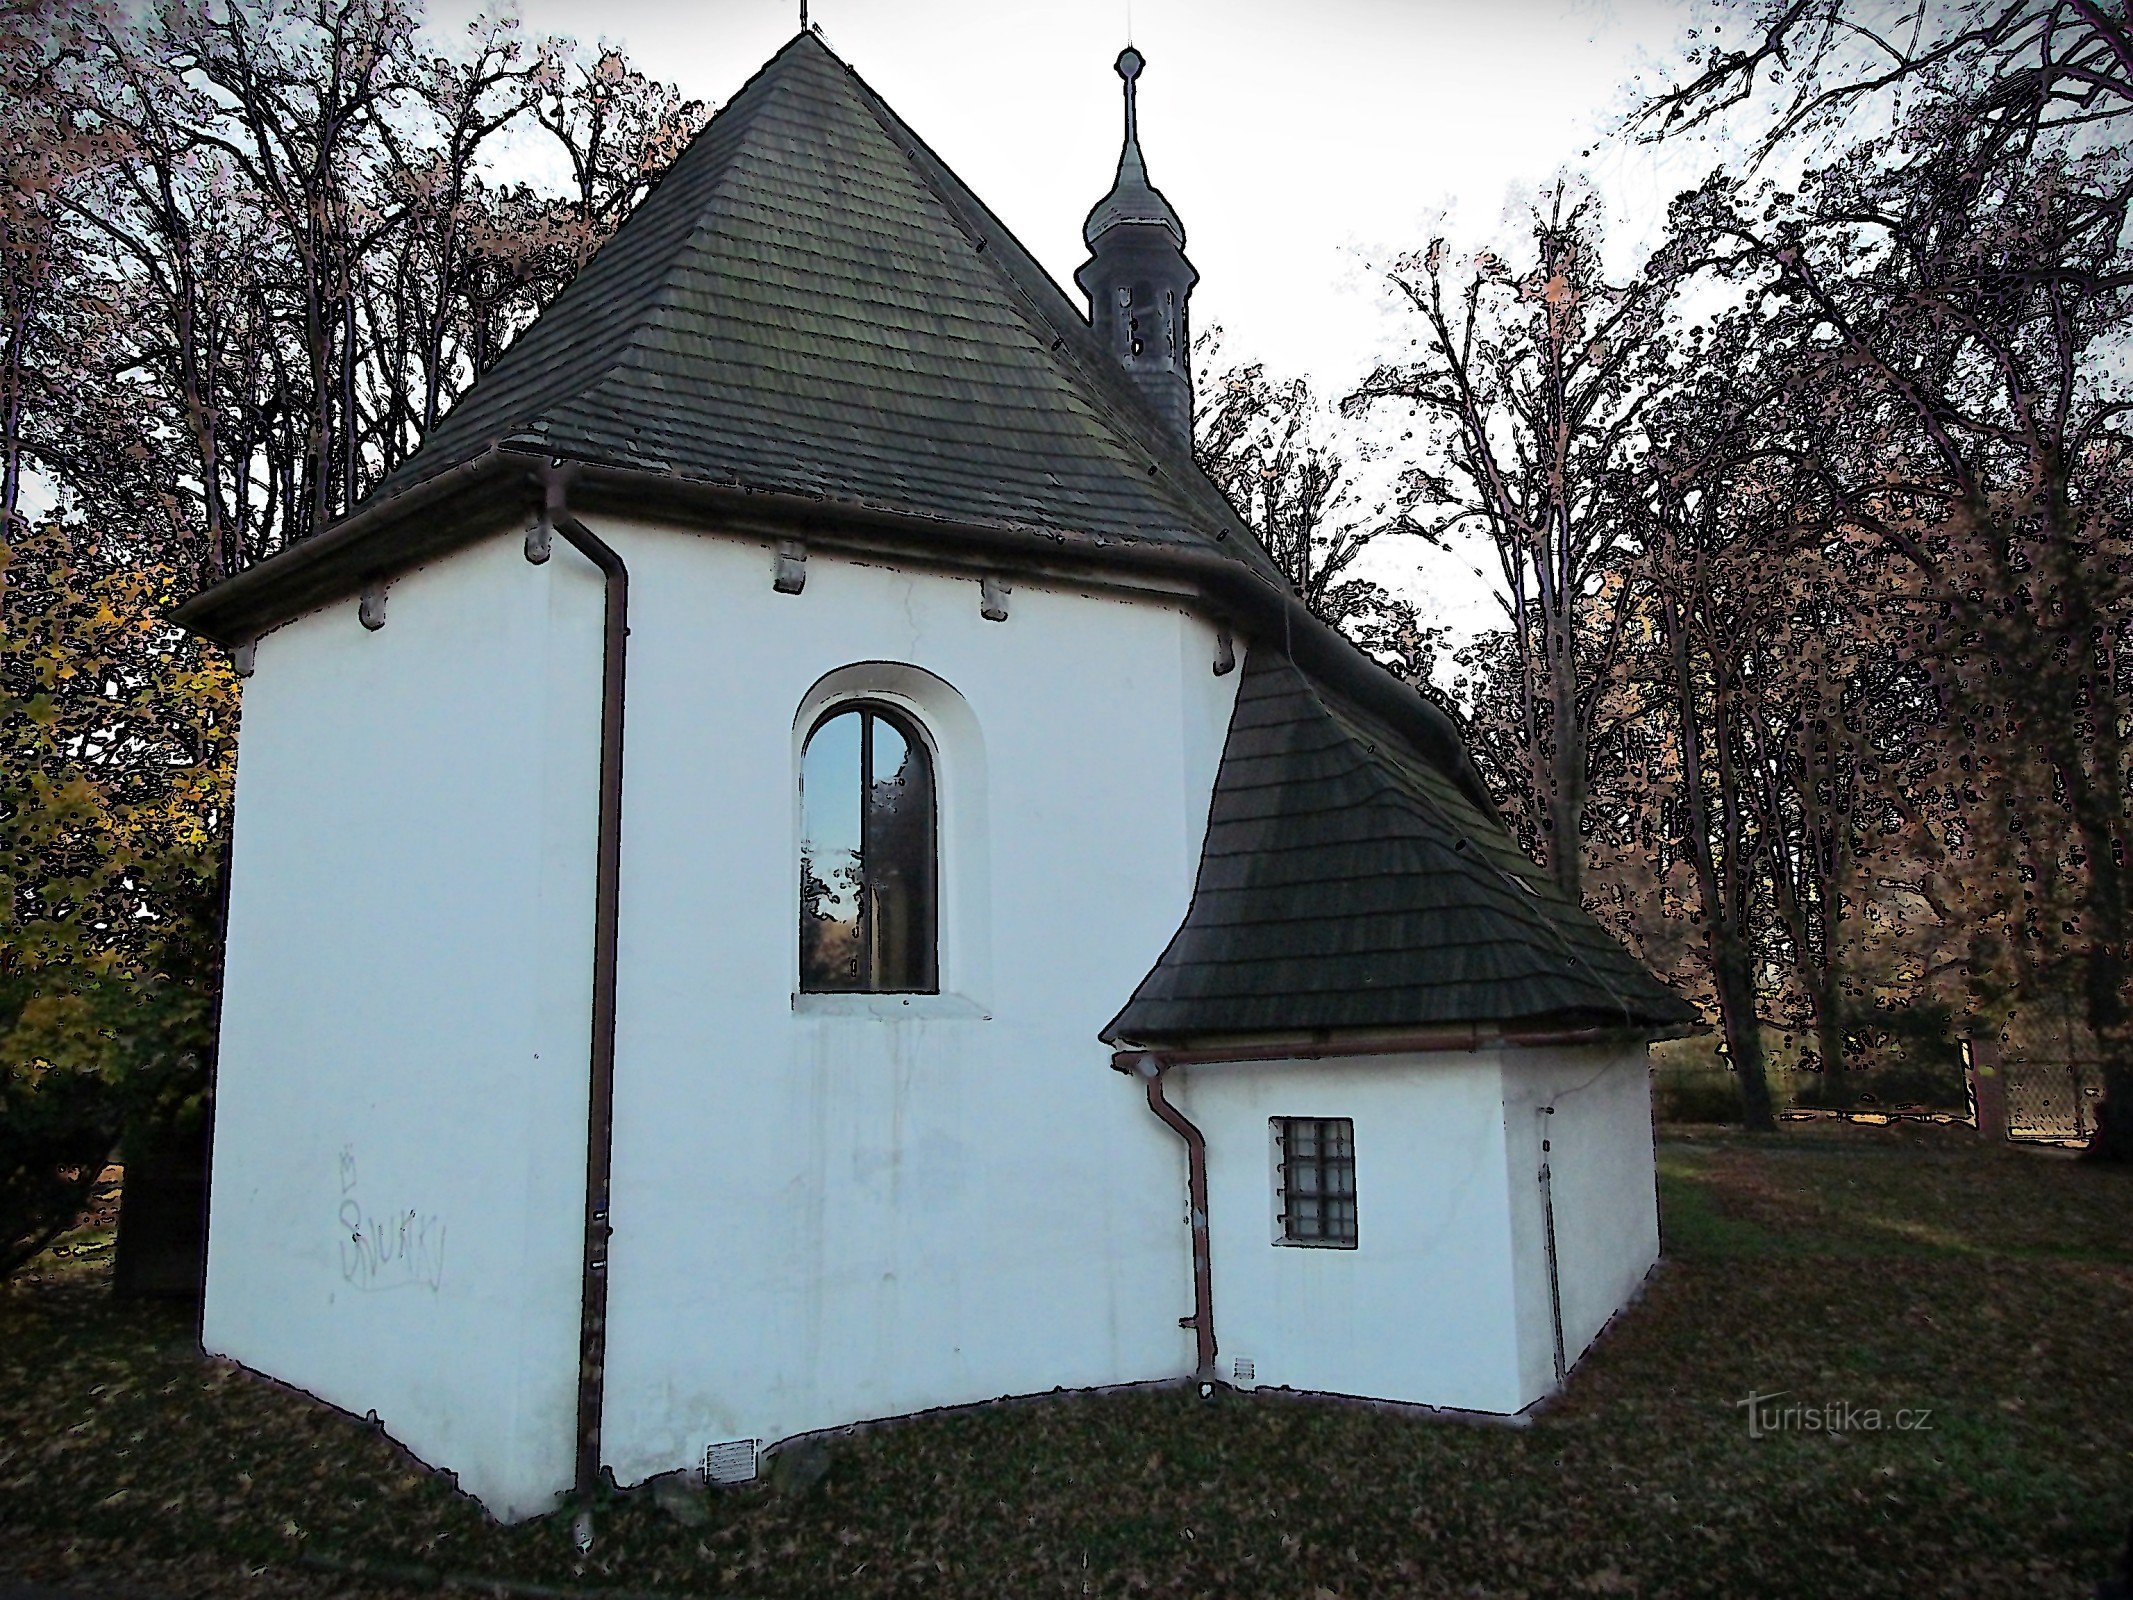 Valašské Meziříčí - A gyönyörű Szent Jakab-templom